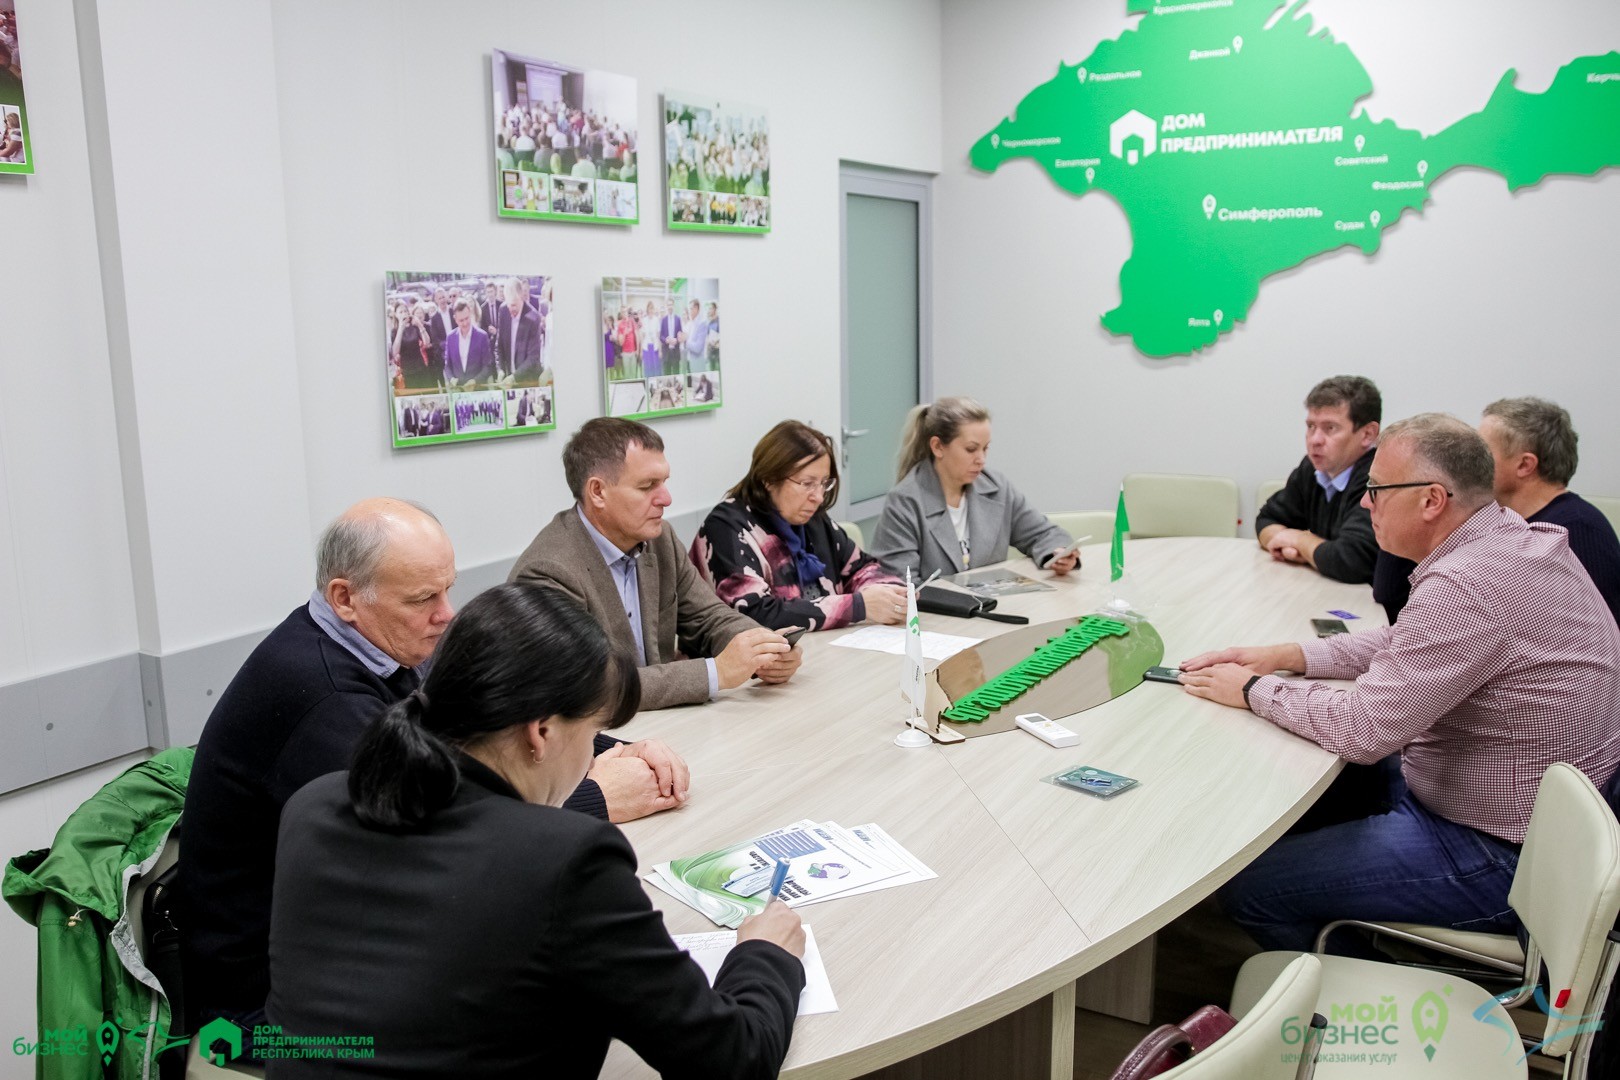 Бизнес-миссия предпринимателей из Новосибирска – в гостях у Фонда поддержки предпринимательства Крыма